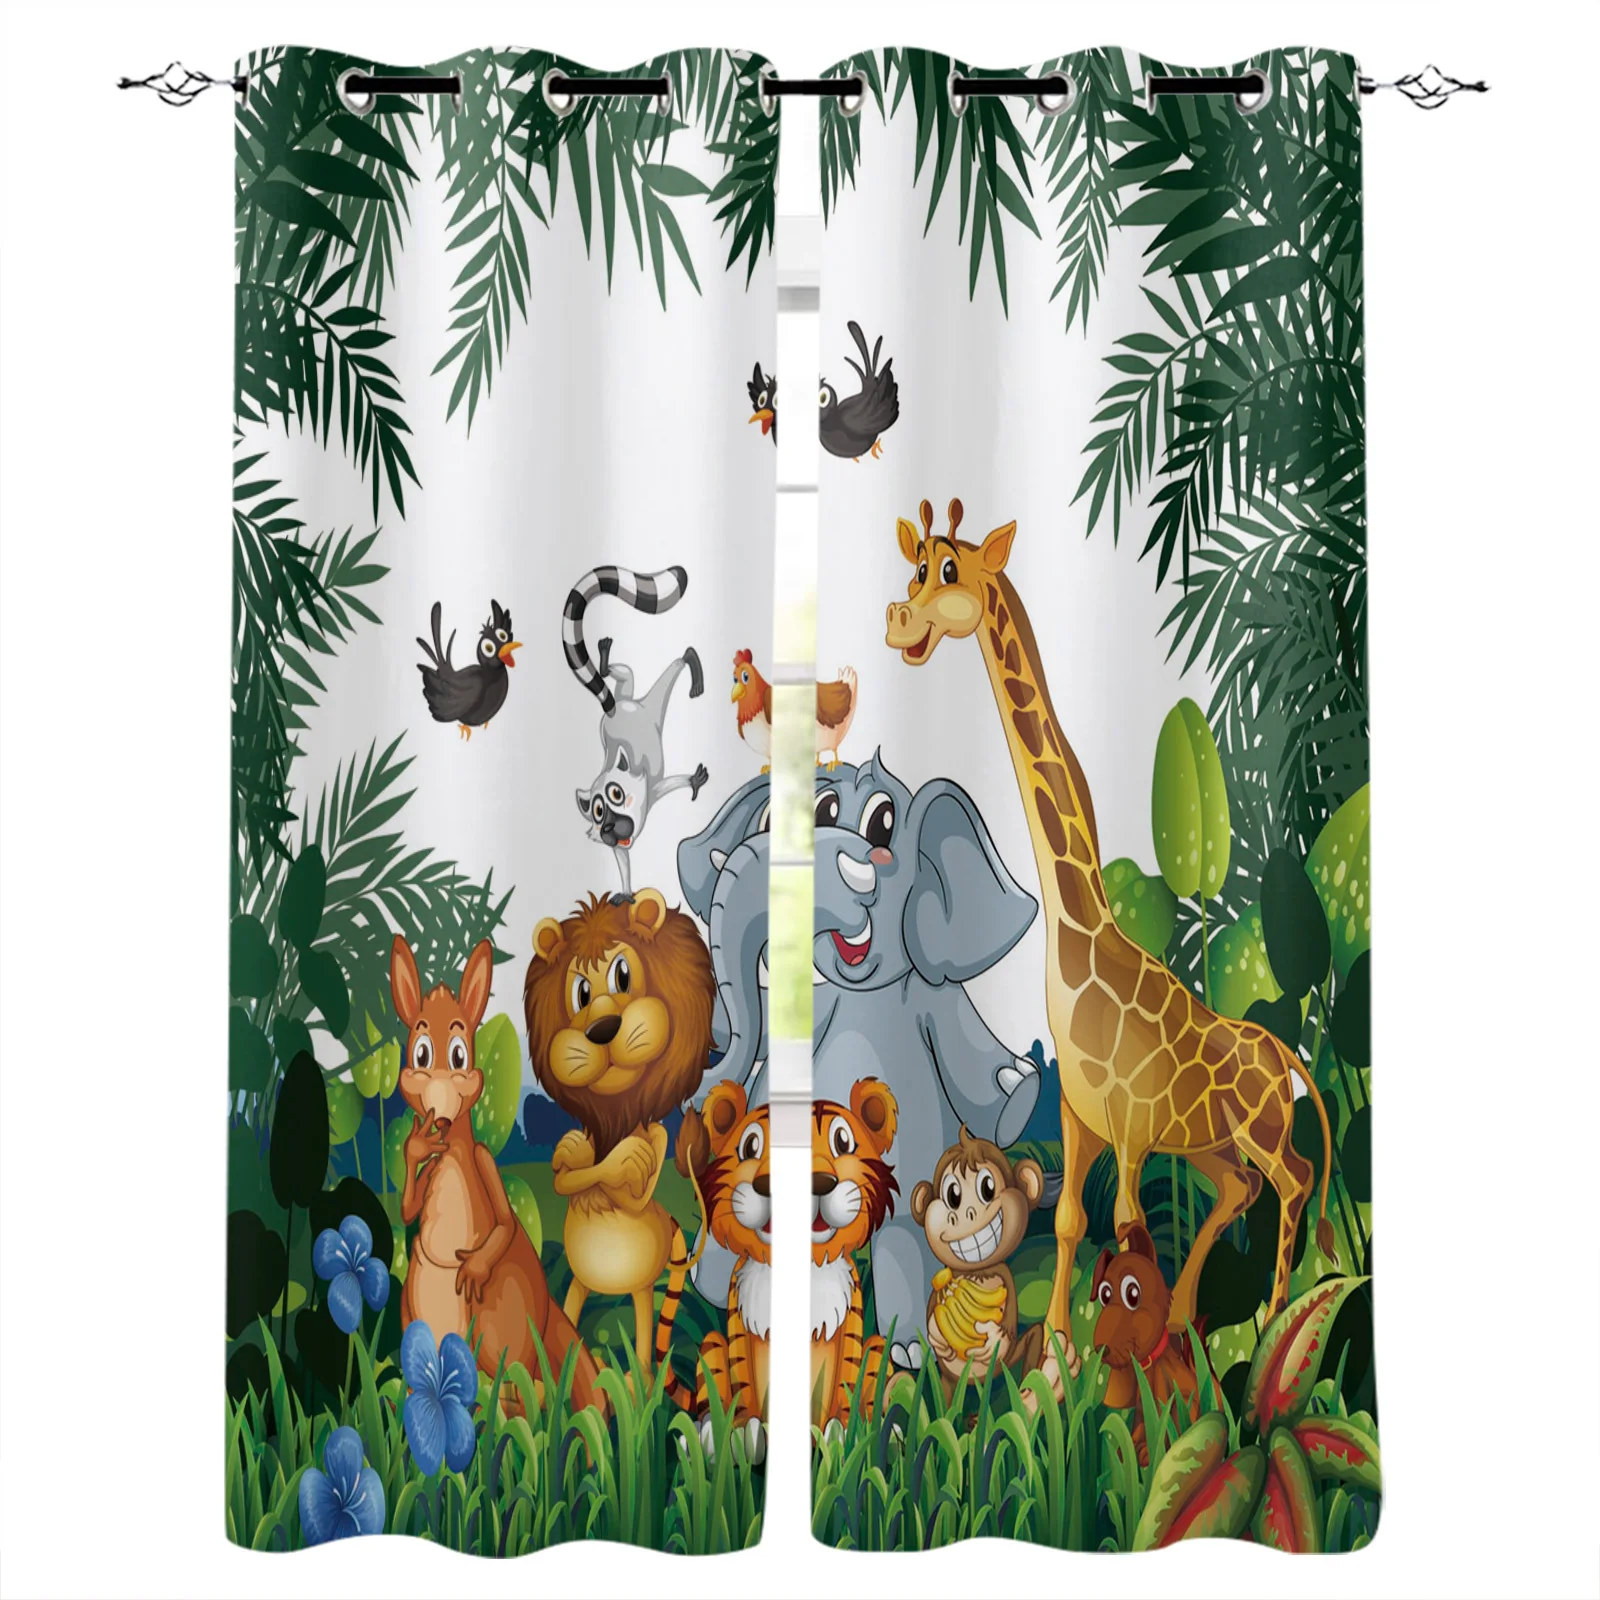 

Тропические джунгли мультфильмы Животные Жираф Лев Слон шторы для детской спальни гостиной Детские Оконные Занавески